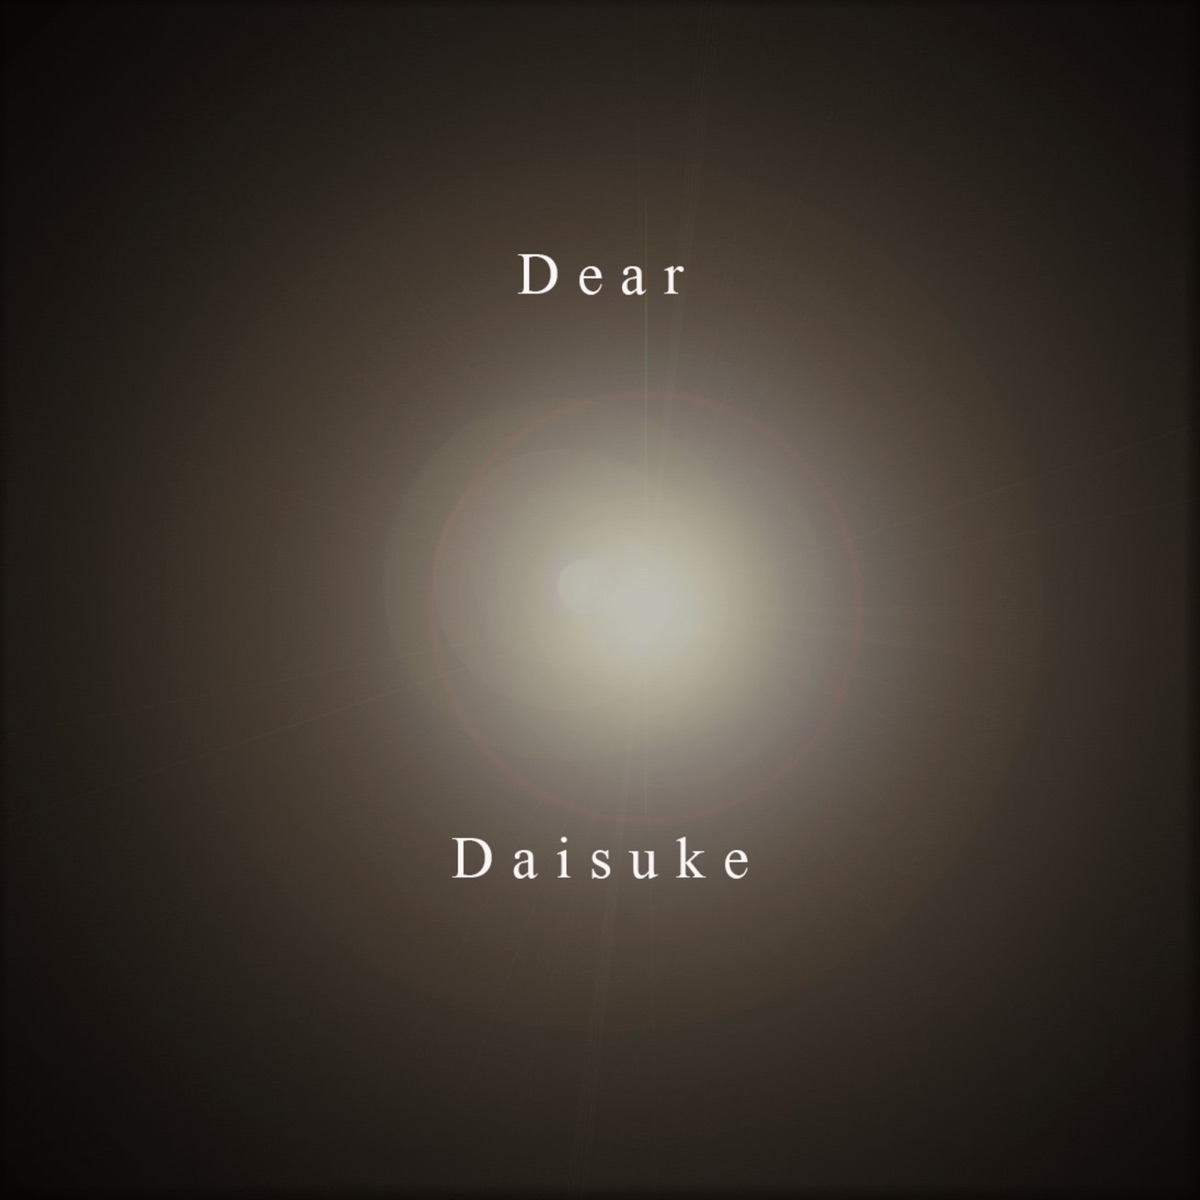 君の声が聞こえるから - Single” álbum de Daisuke en Apple Music